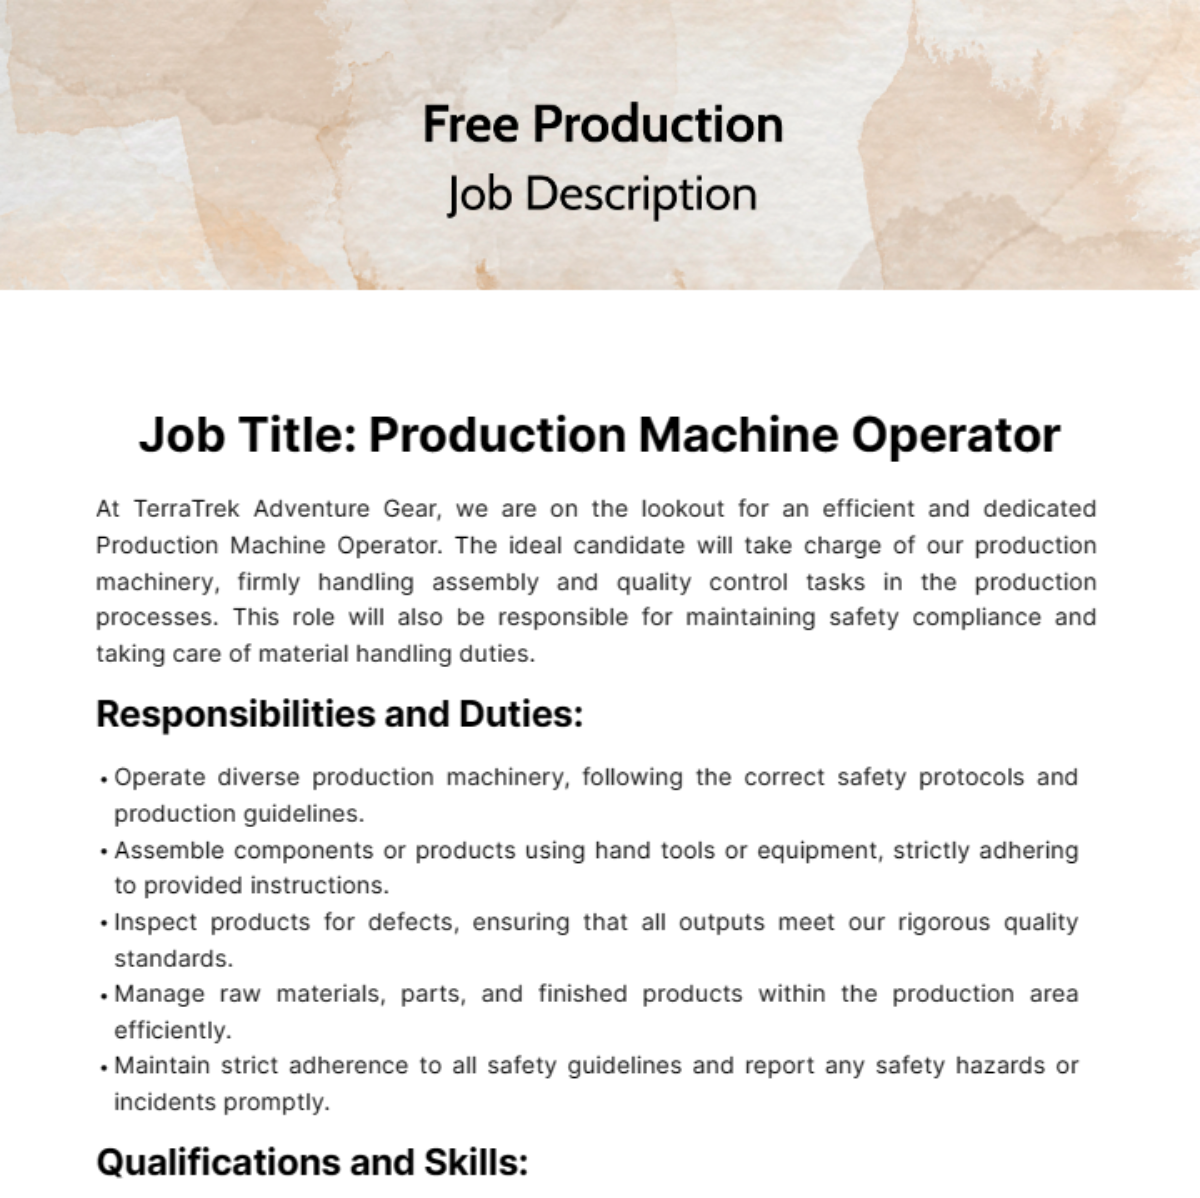 Free Production Job Description Template